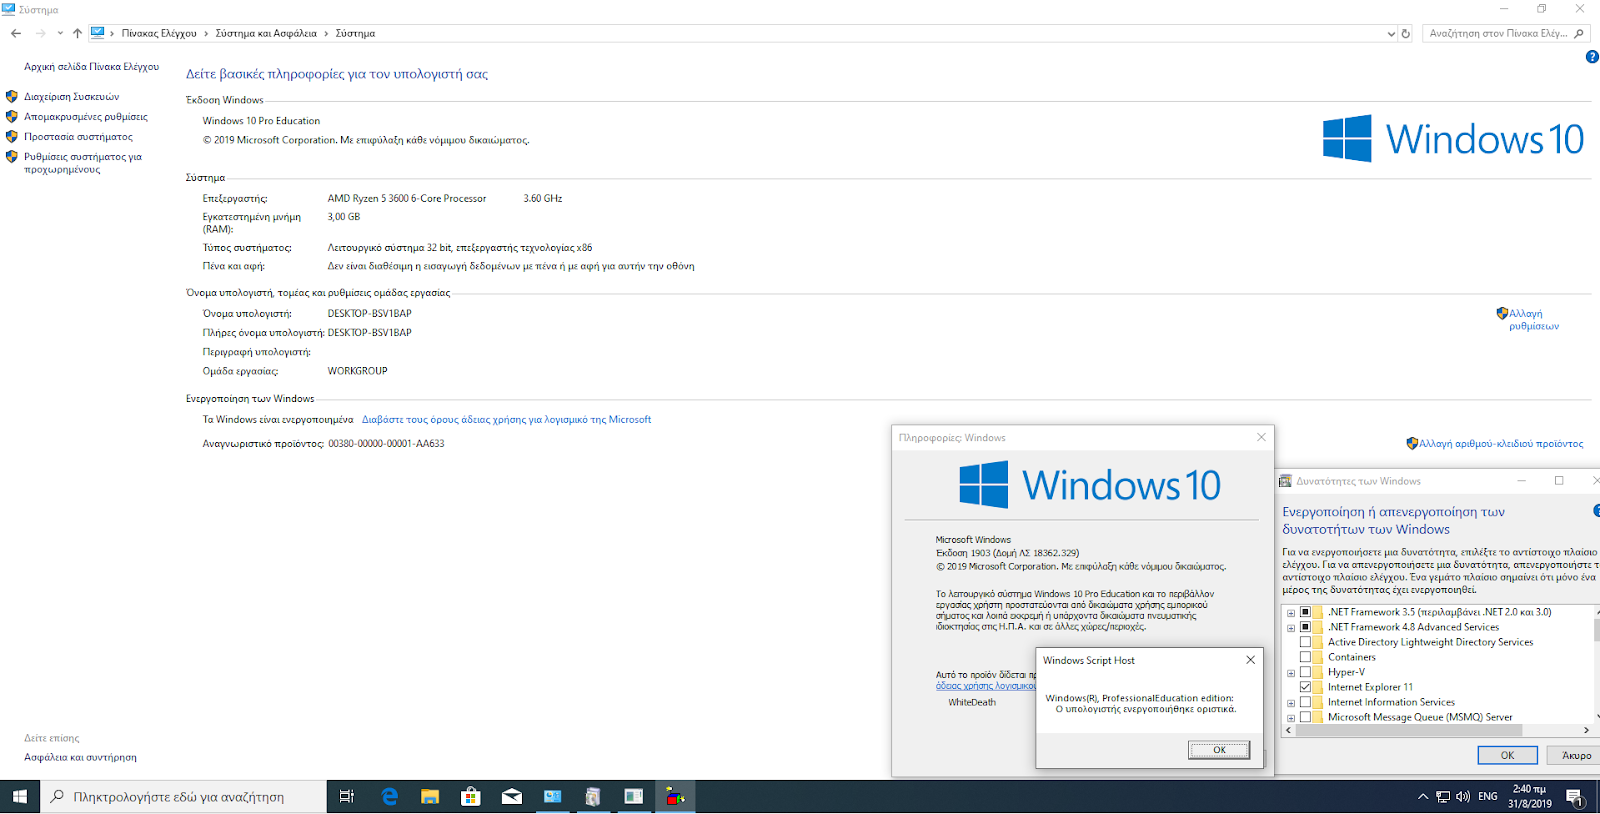 Windows 10 AIO Agosto 2016 32 e 64 Bits PT BR crack